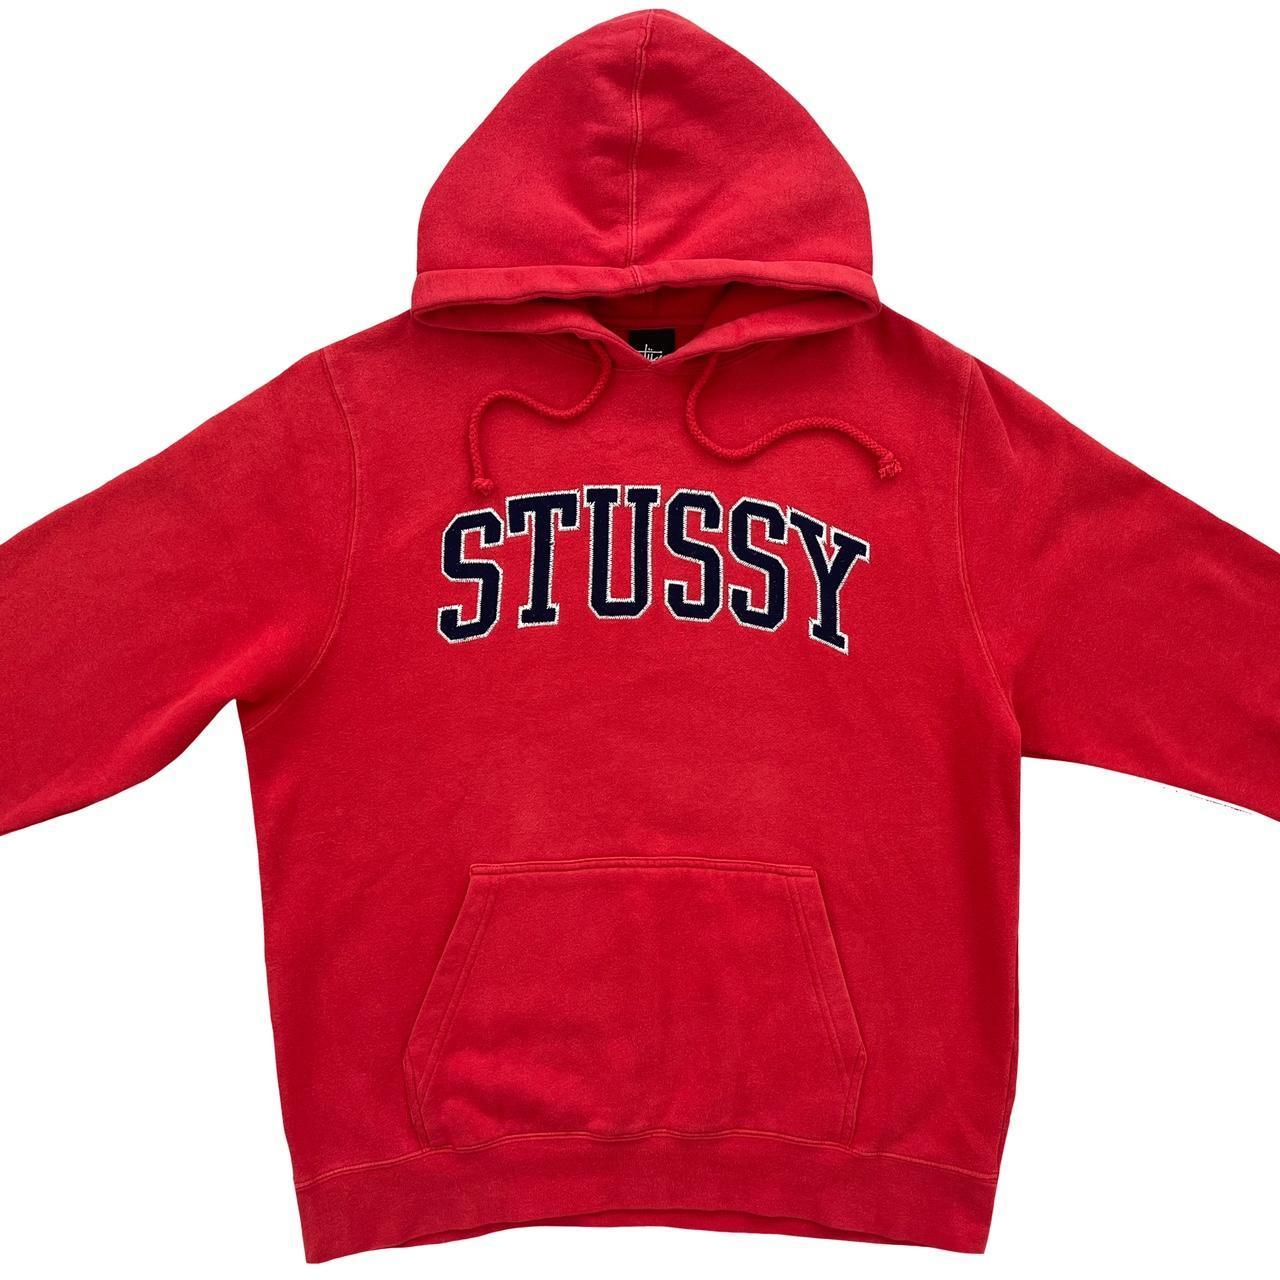 Stussy Hoodie - Known Source